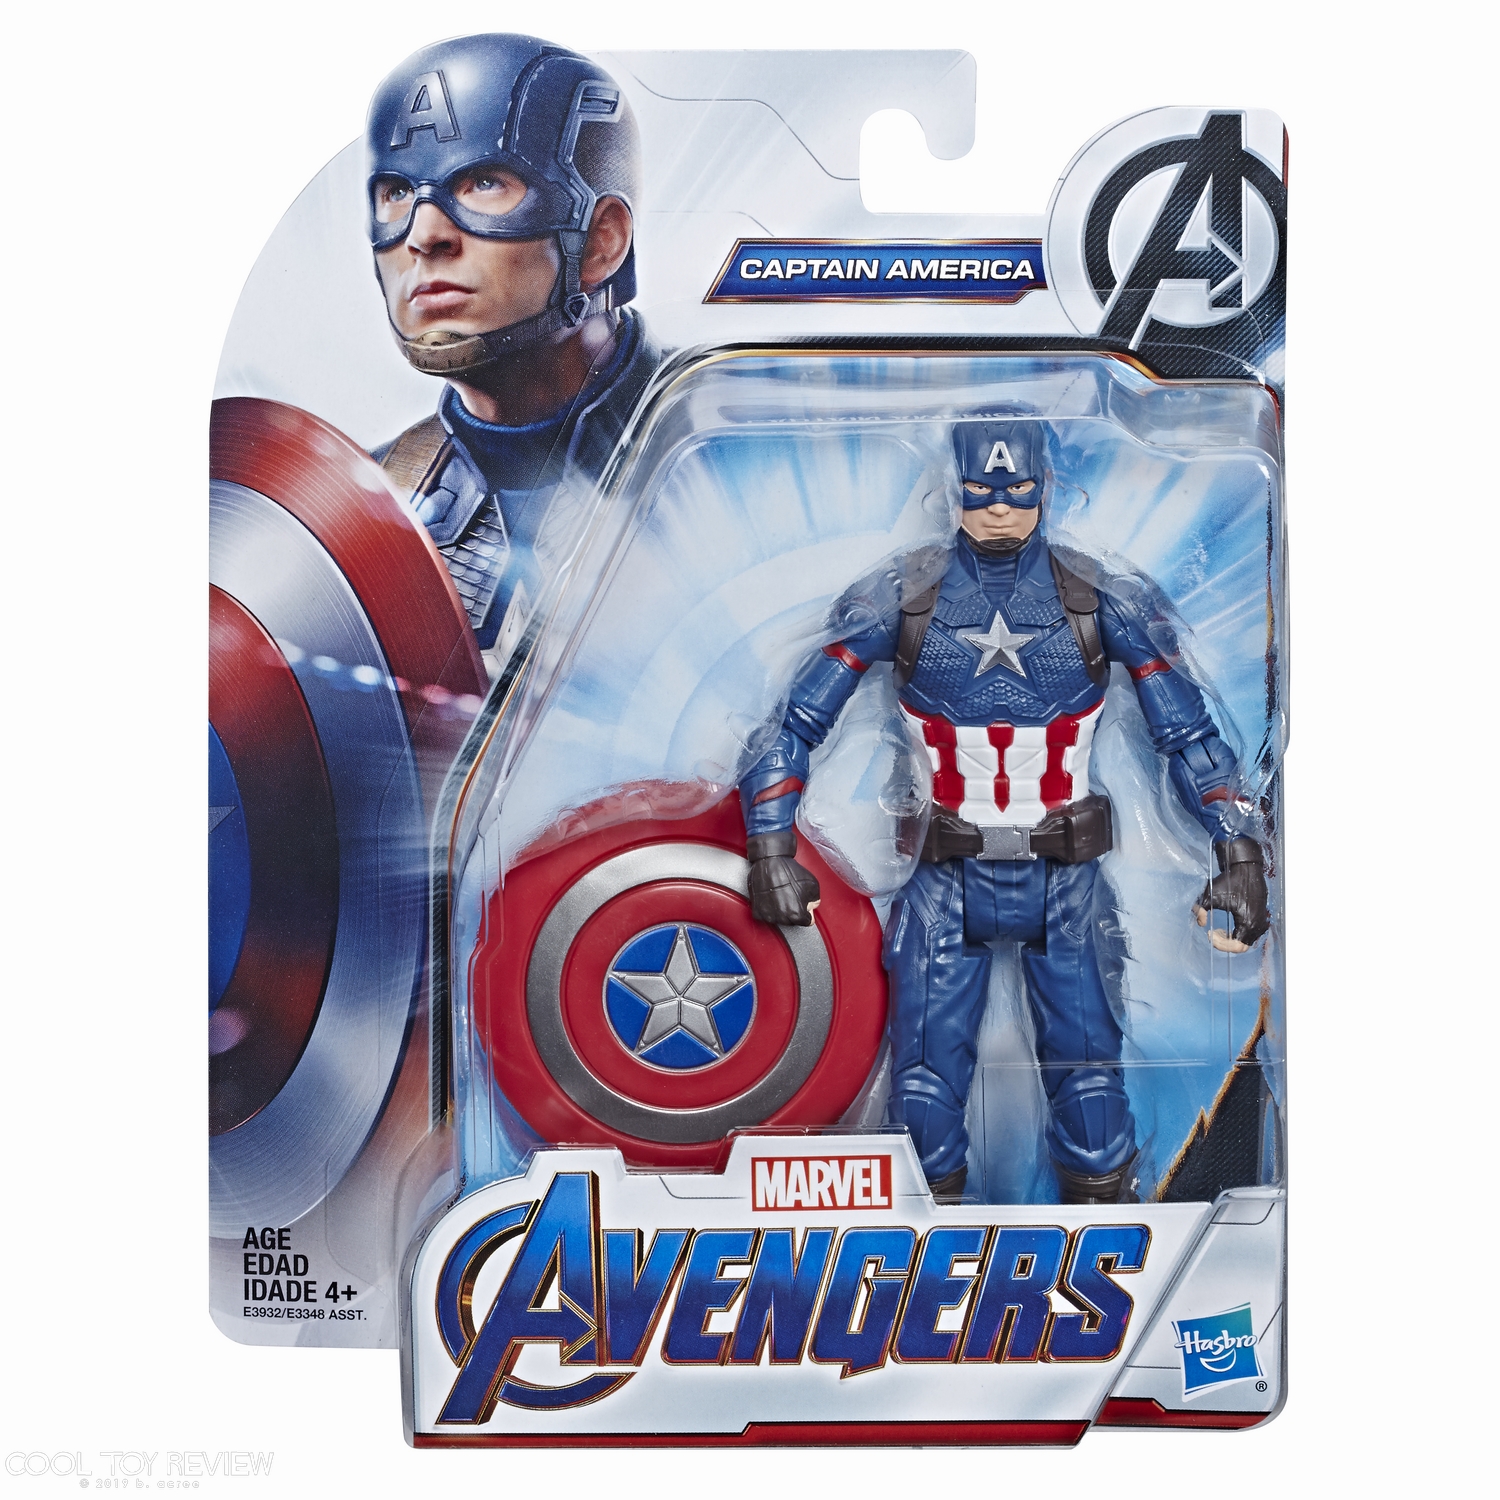 MARVEL AVENGERS ENDGAME 6-INCH Figure Assortment - Captain America (in pck).jpg